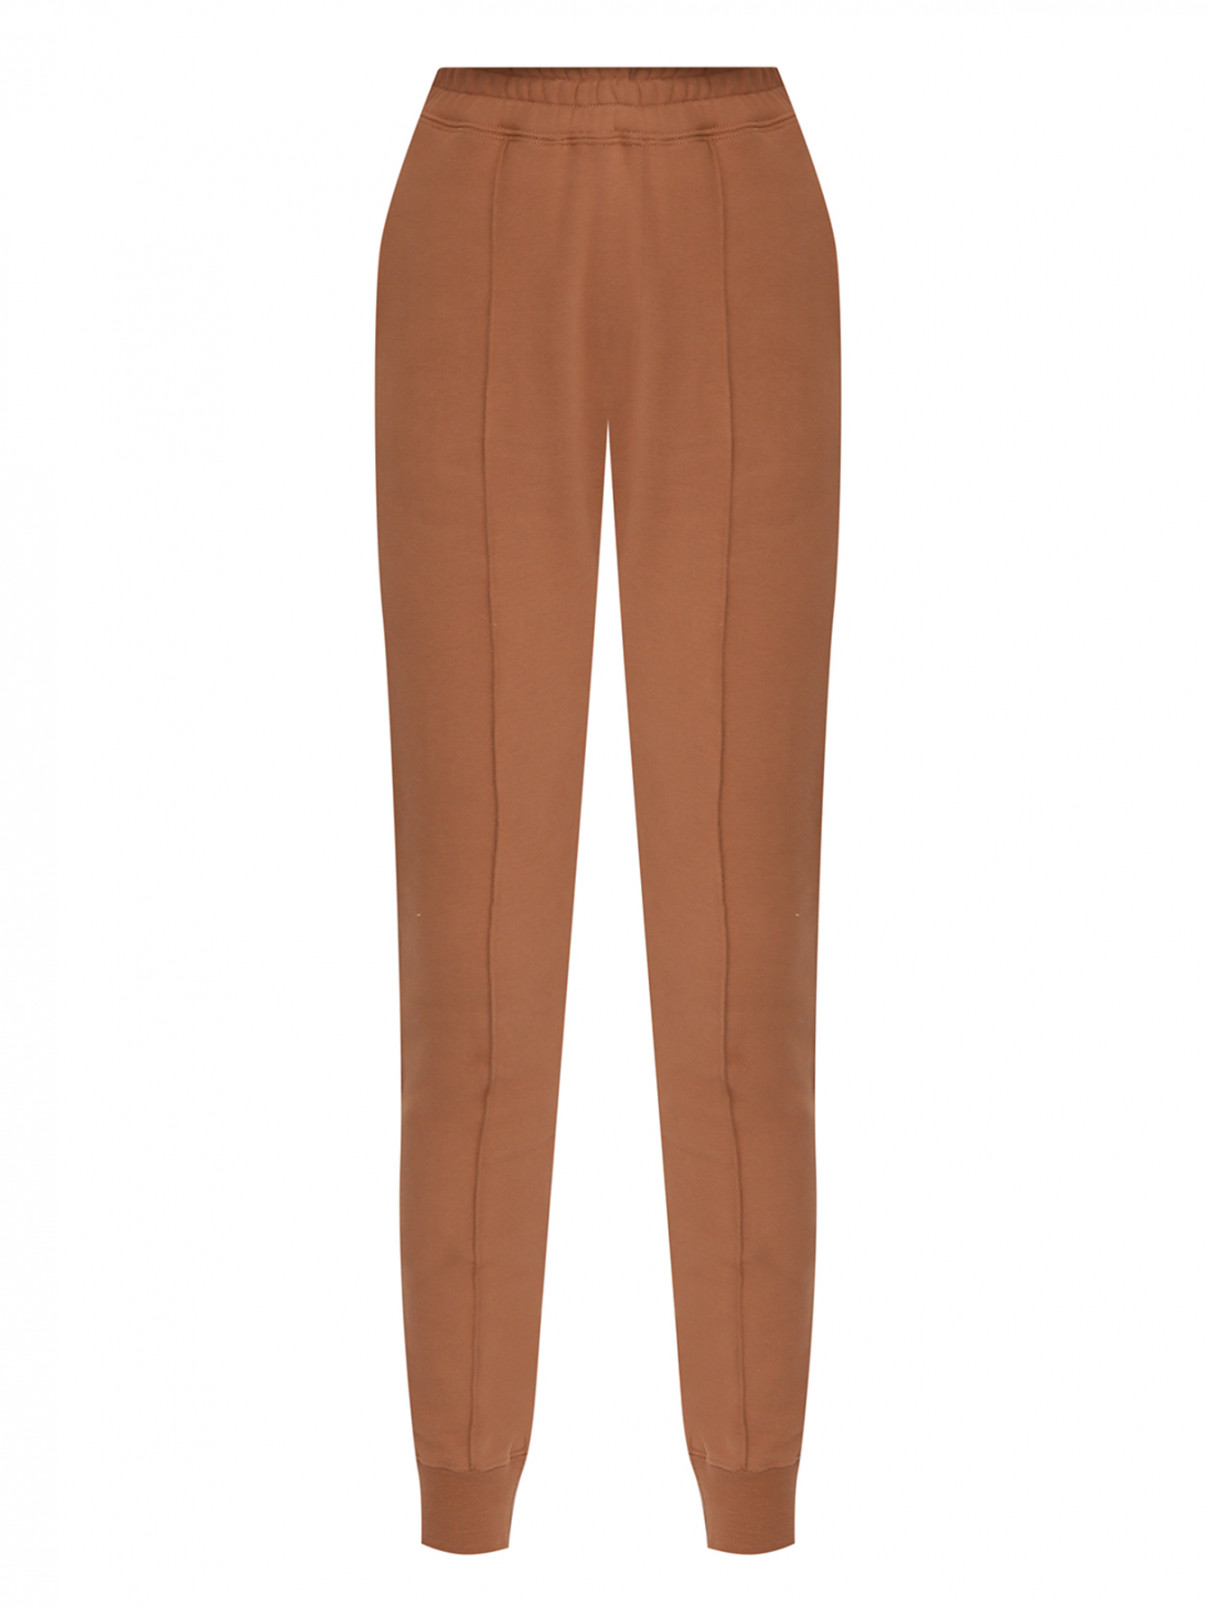 Однотонные брюки из хлопка на резинке Ermanno Scervino  –  Общий вид  – Цвет:  Коричневый